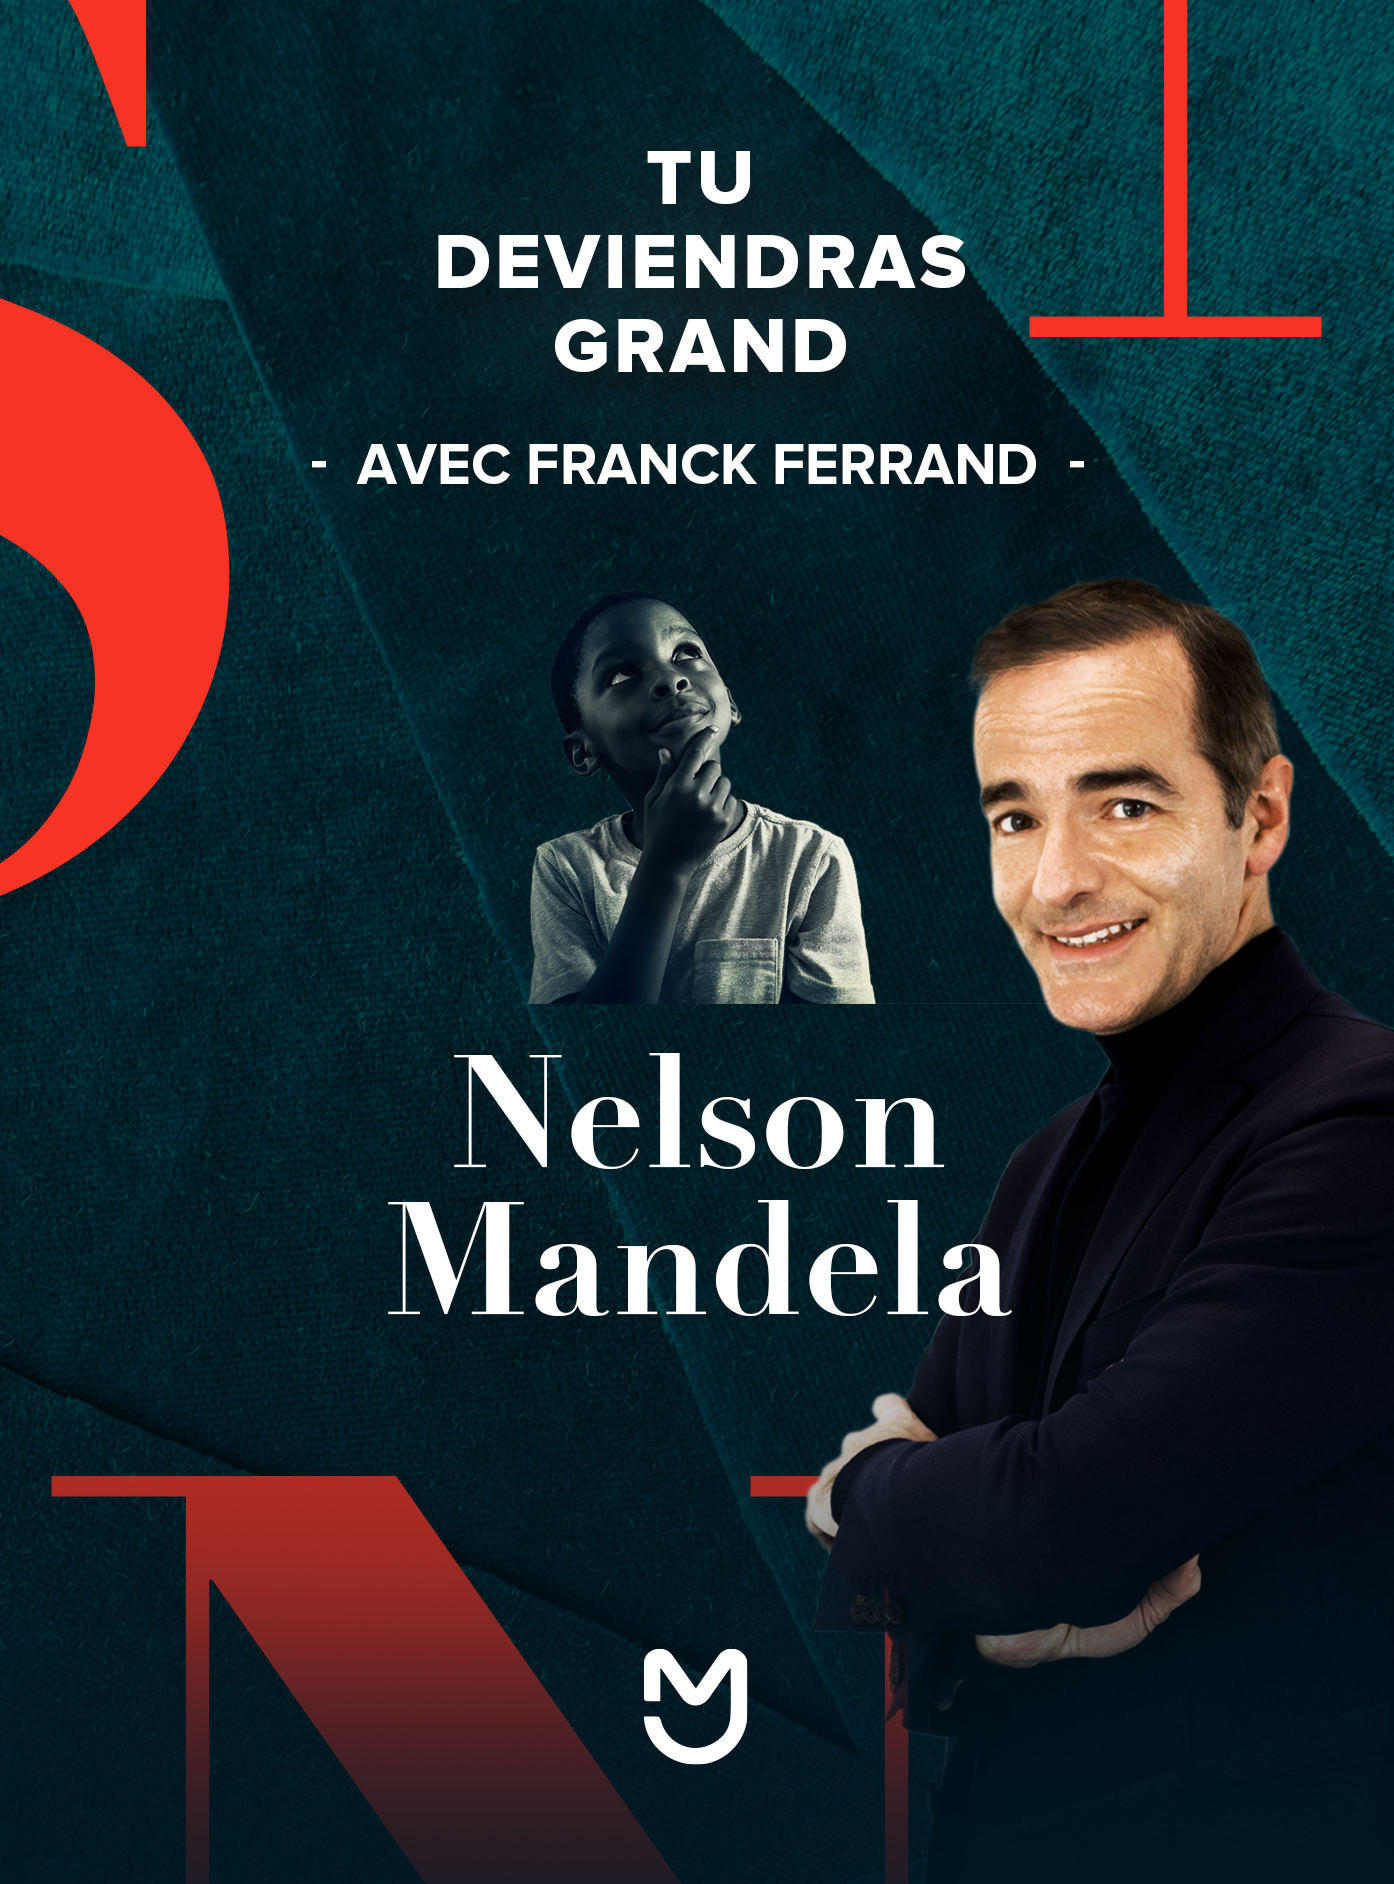 Franck Ferrand, Nelson Mandela